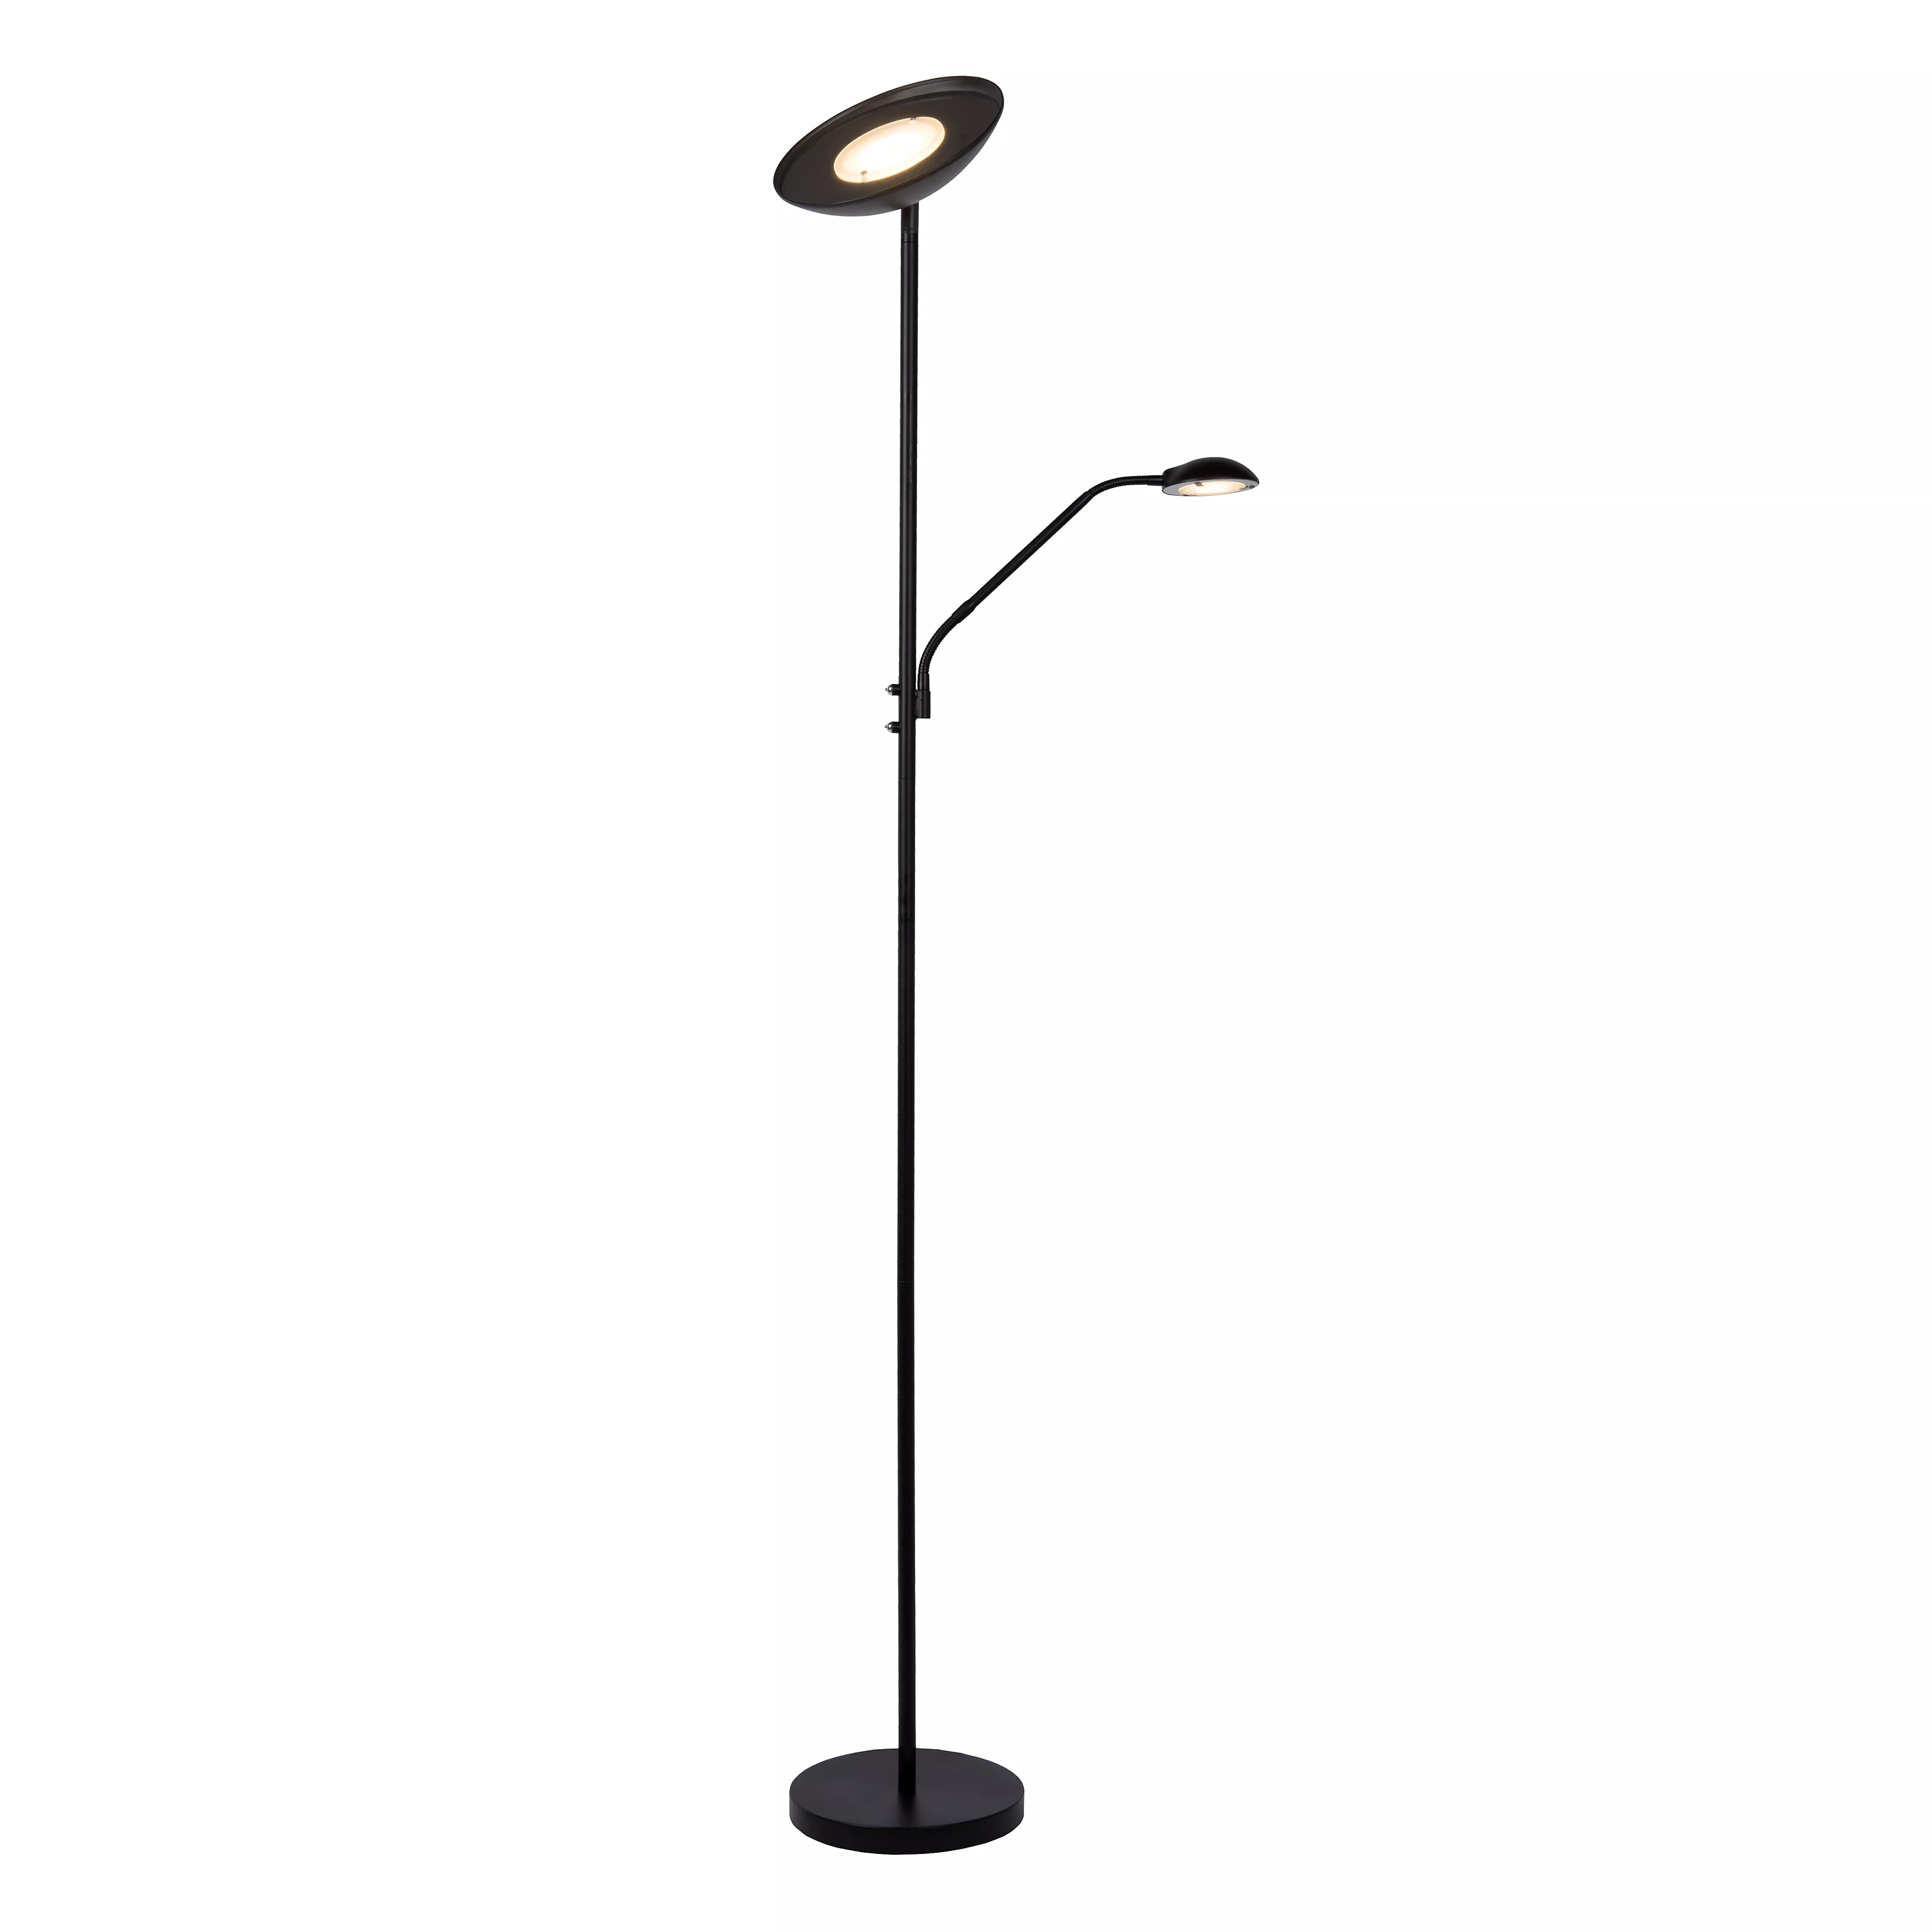 Stojací lampa Zenith od Lucide kombinuje dvě stínítka s integrovaným LED zdrojem a nastavitelným ramenem. Ideální do obývacího pokoje nebo ložnice.